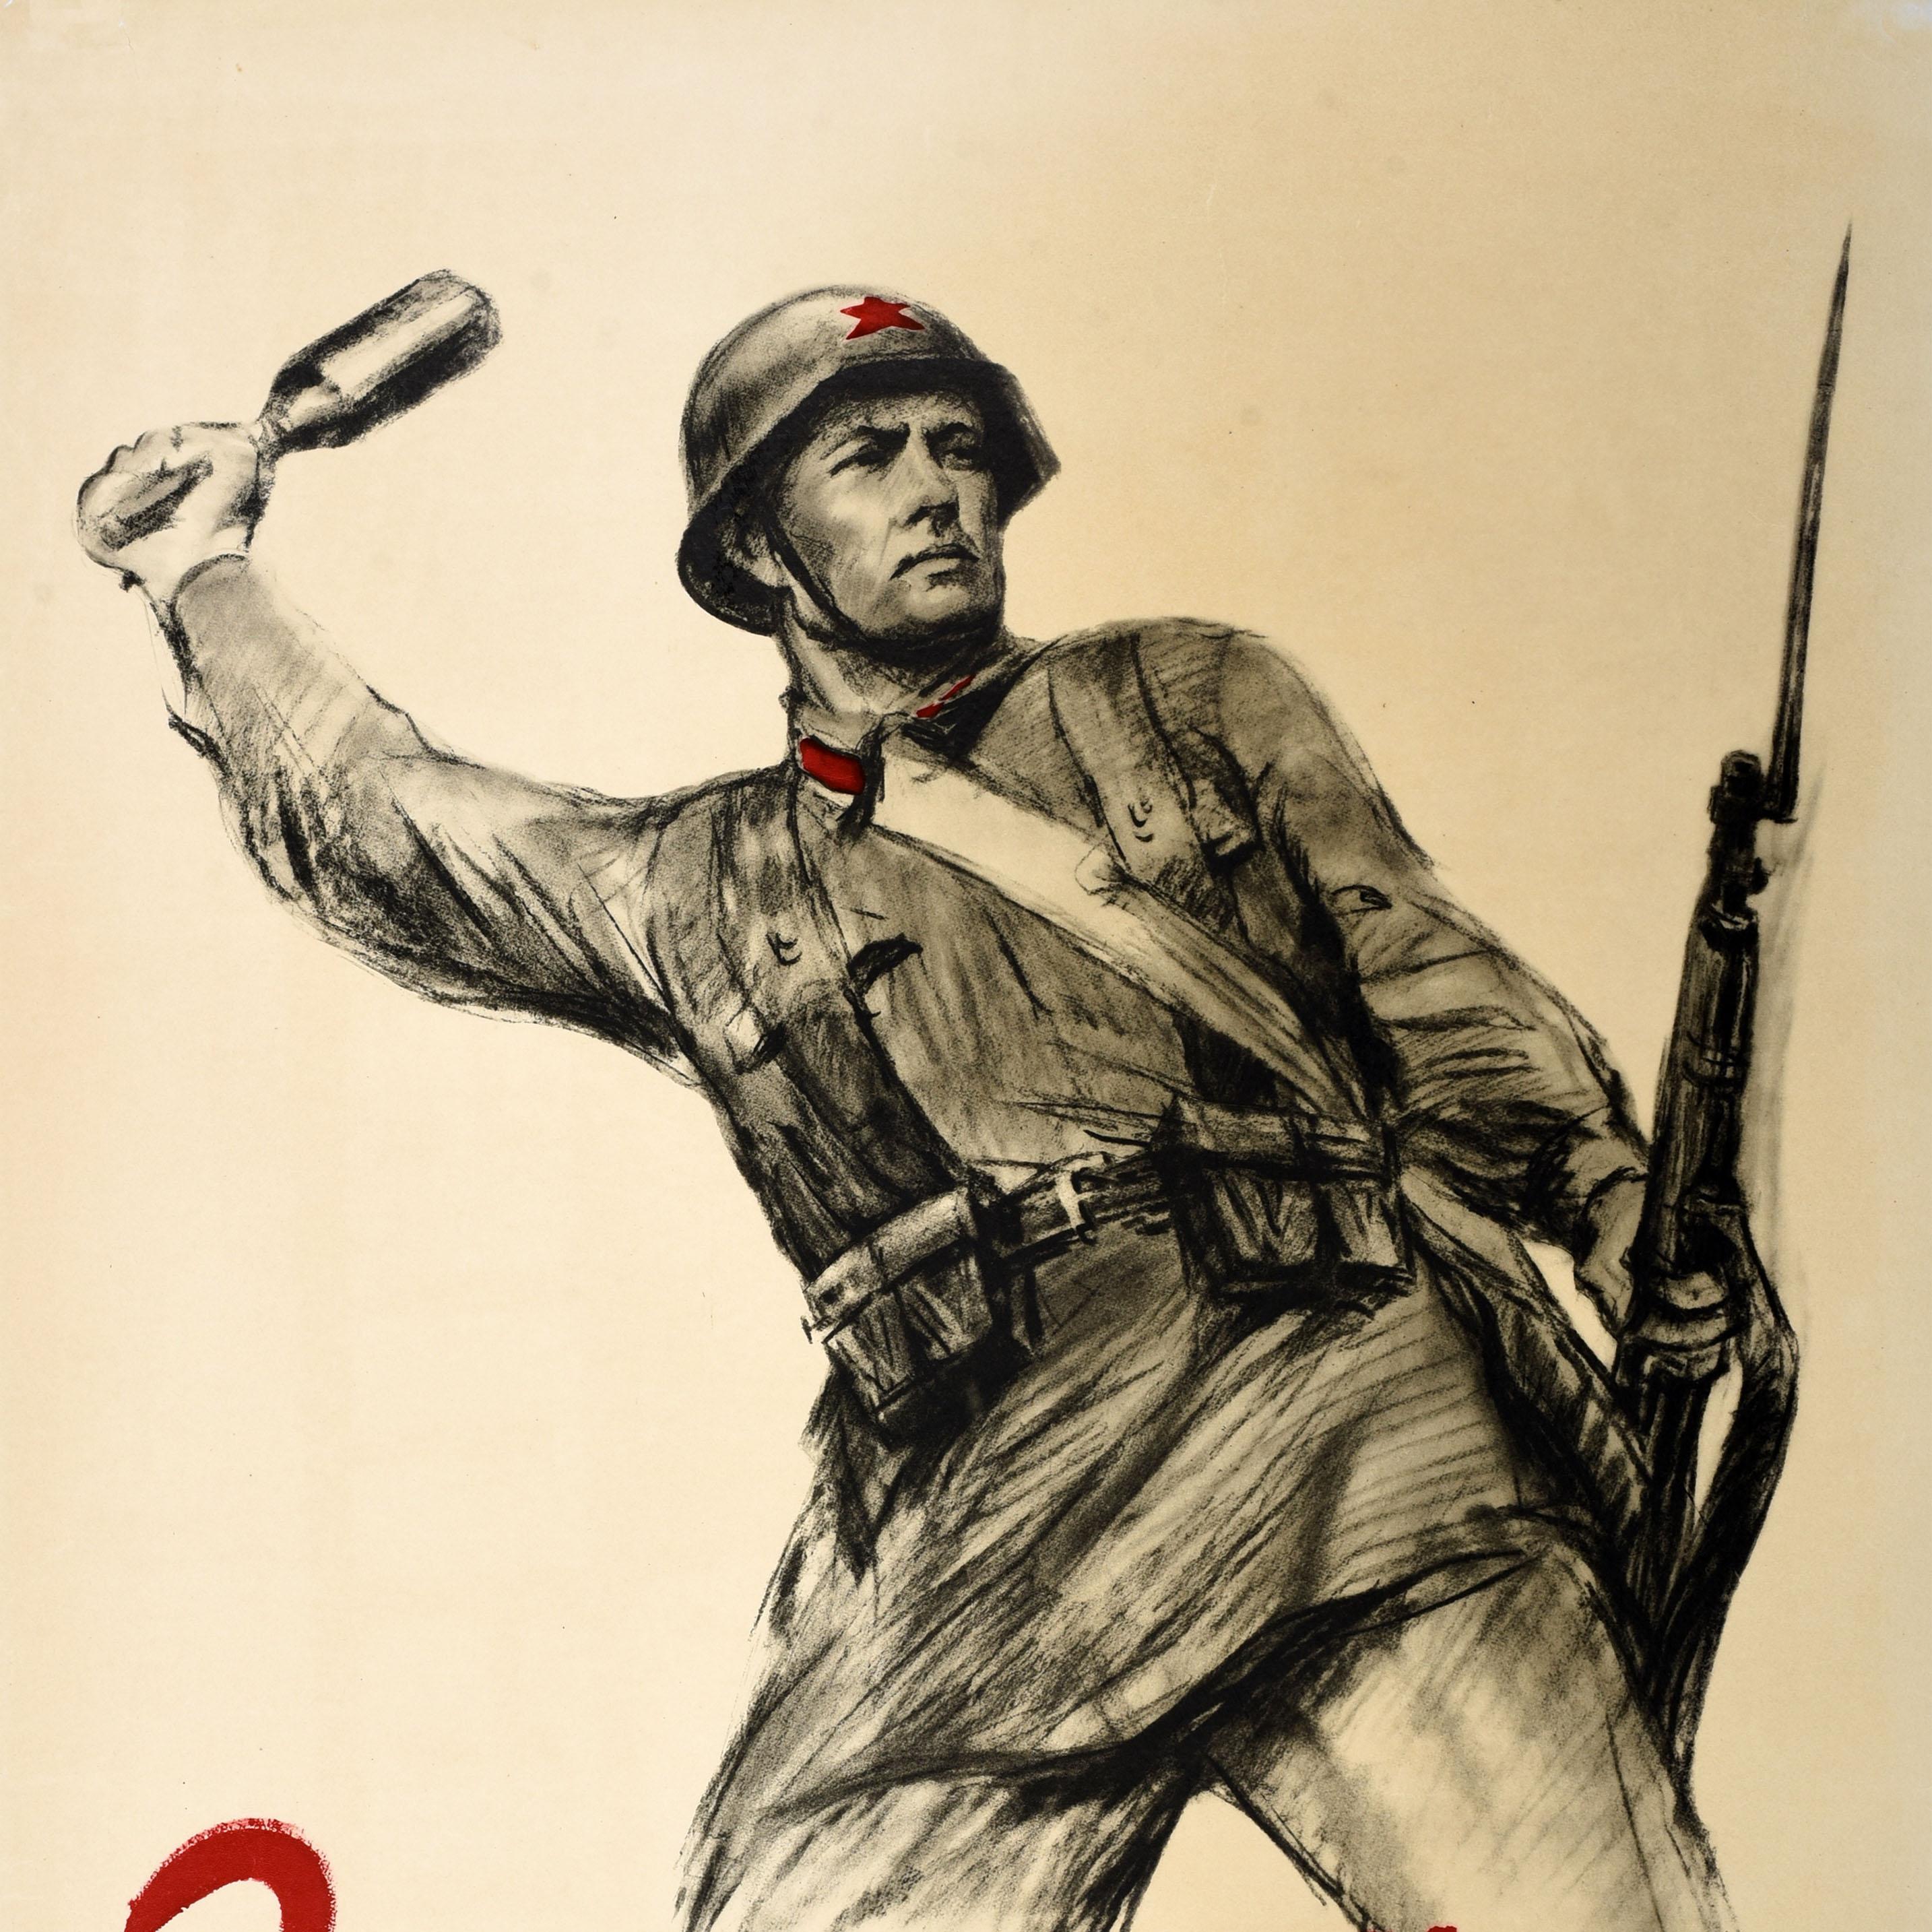 Seltene Original Vintage WWII Propaganda Poster Niederlage faschistische Angreifer UdSSR Armee (Beige), Print, von Unknown